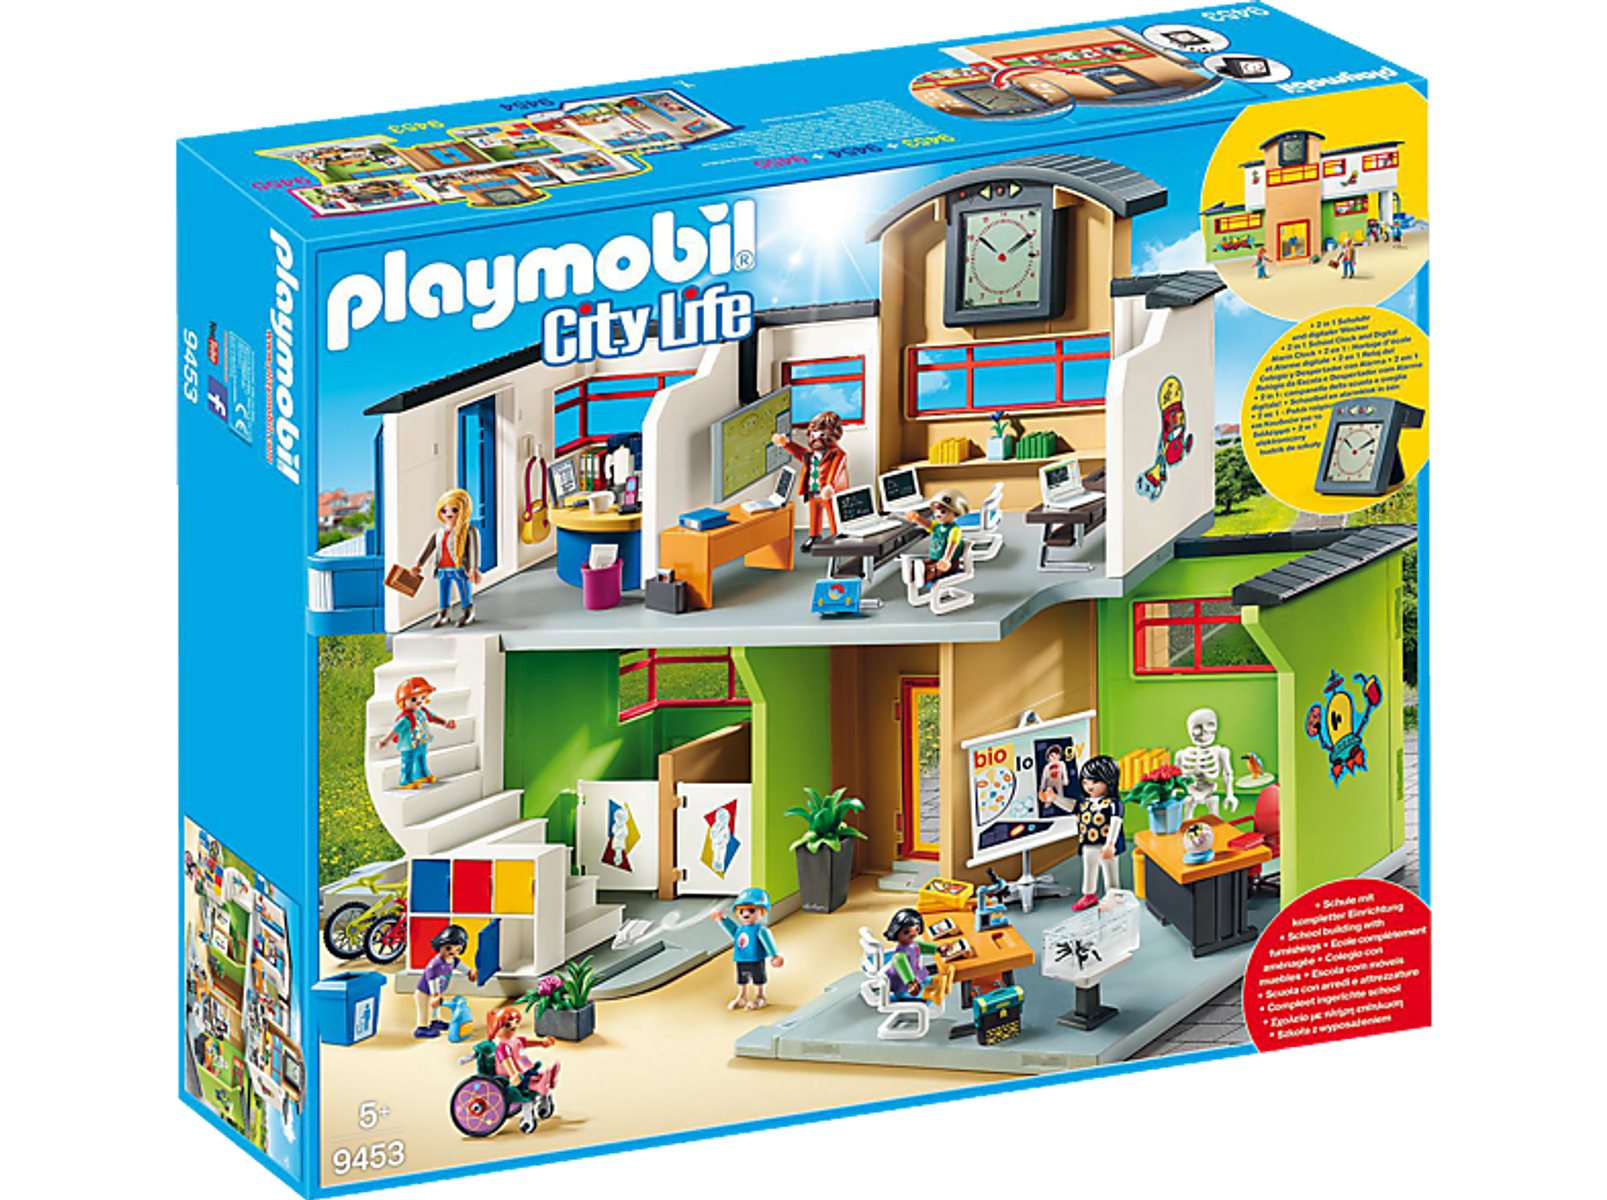 PLAYMOBIL Colegio City Life 9453 Spielzeugsets